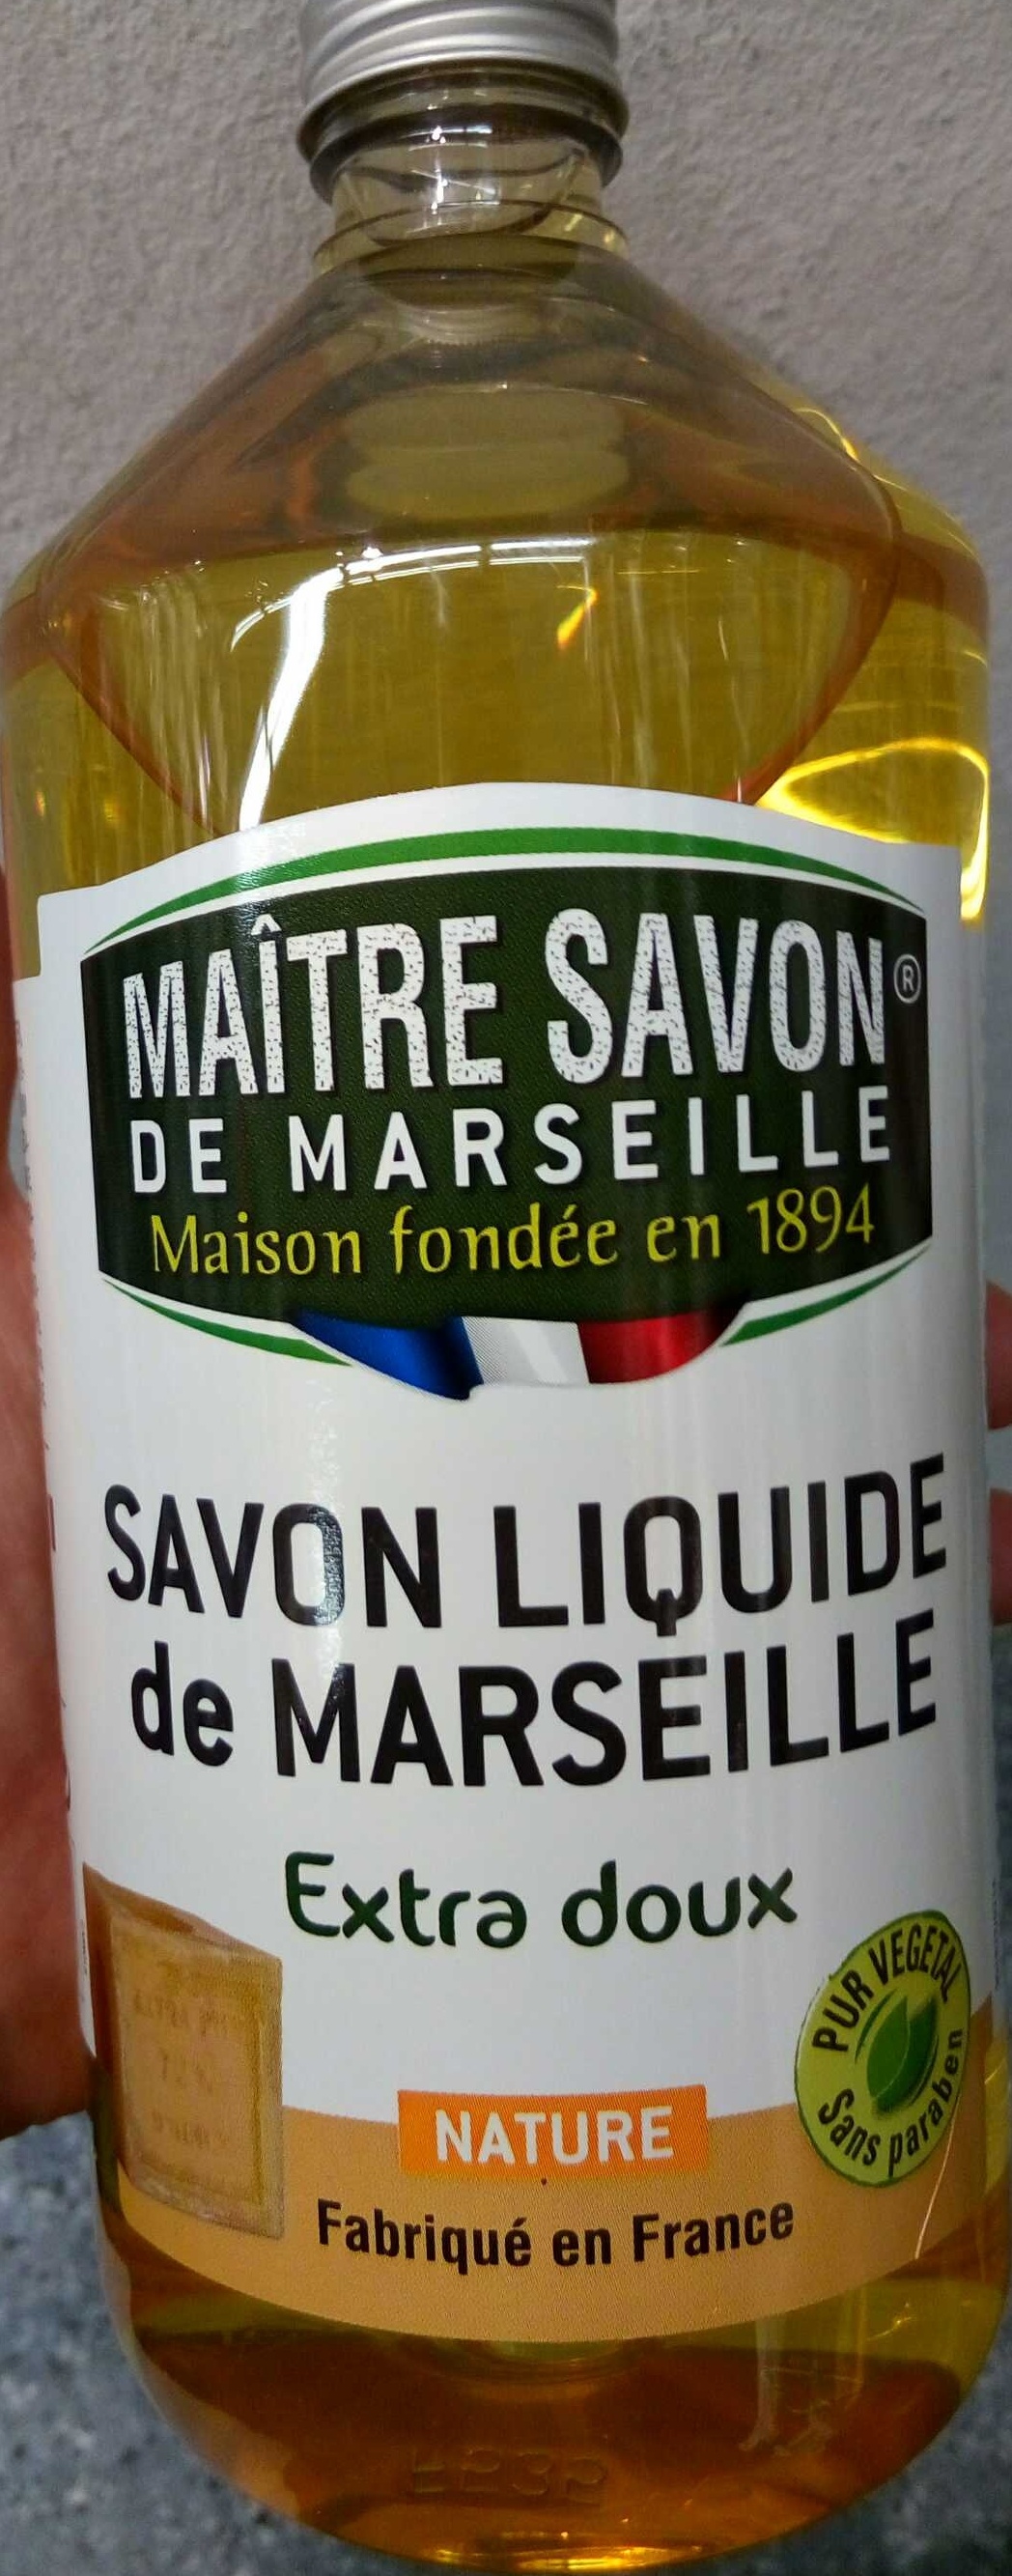 Savon liquide de Marseille extra doux Nature - Produit - fr